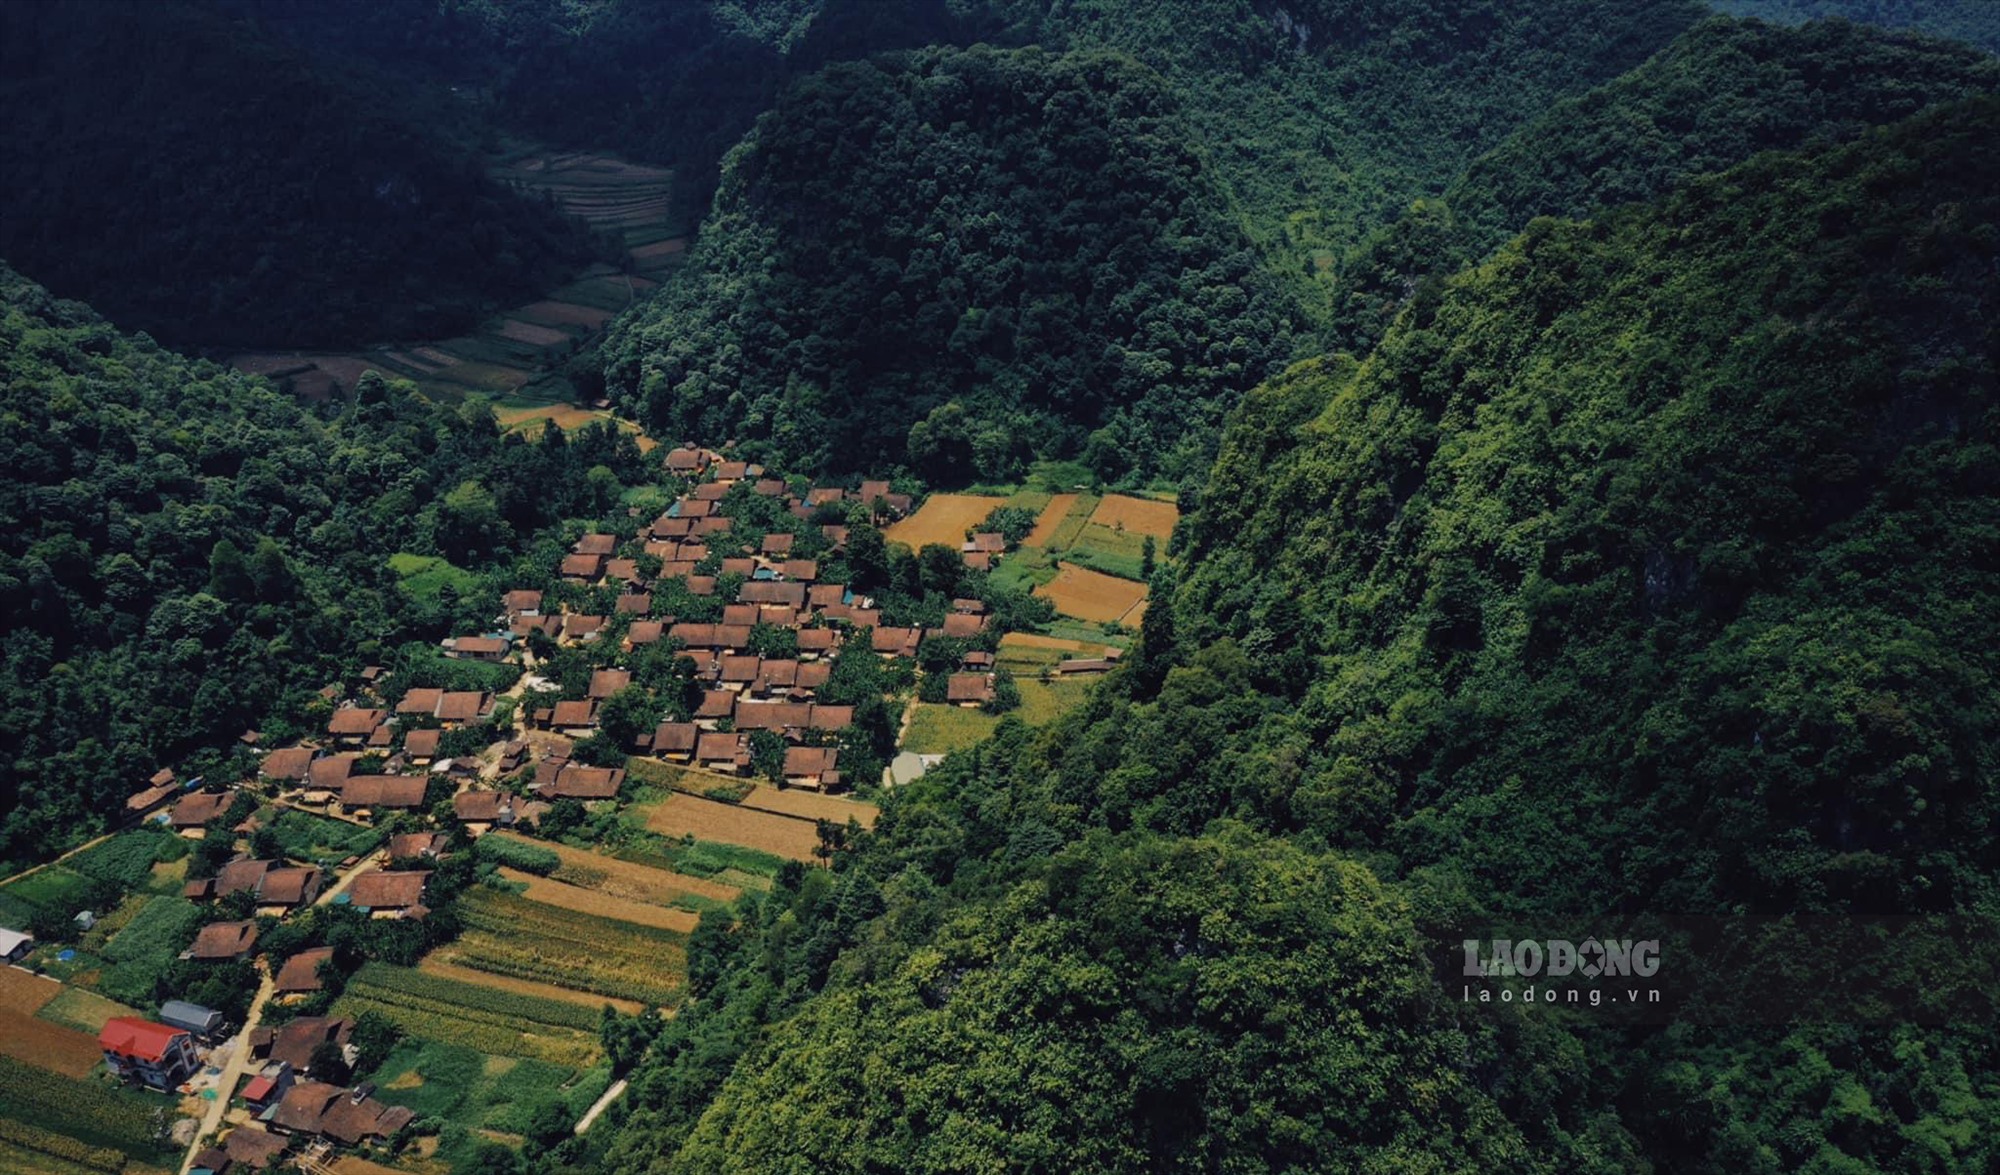 Lũng Rì là một xóm thuộc xã Tự Do, cách trung tâm TP Cao Bằng 30km, nép mình bên góc núi, nghề làm ngói máng (âm dương) nơi đây đã có hàng trăm năm tuổi. Ảnh: Sơn Tùng.